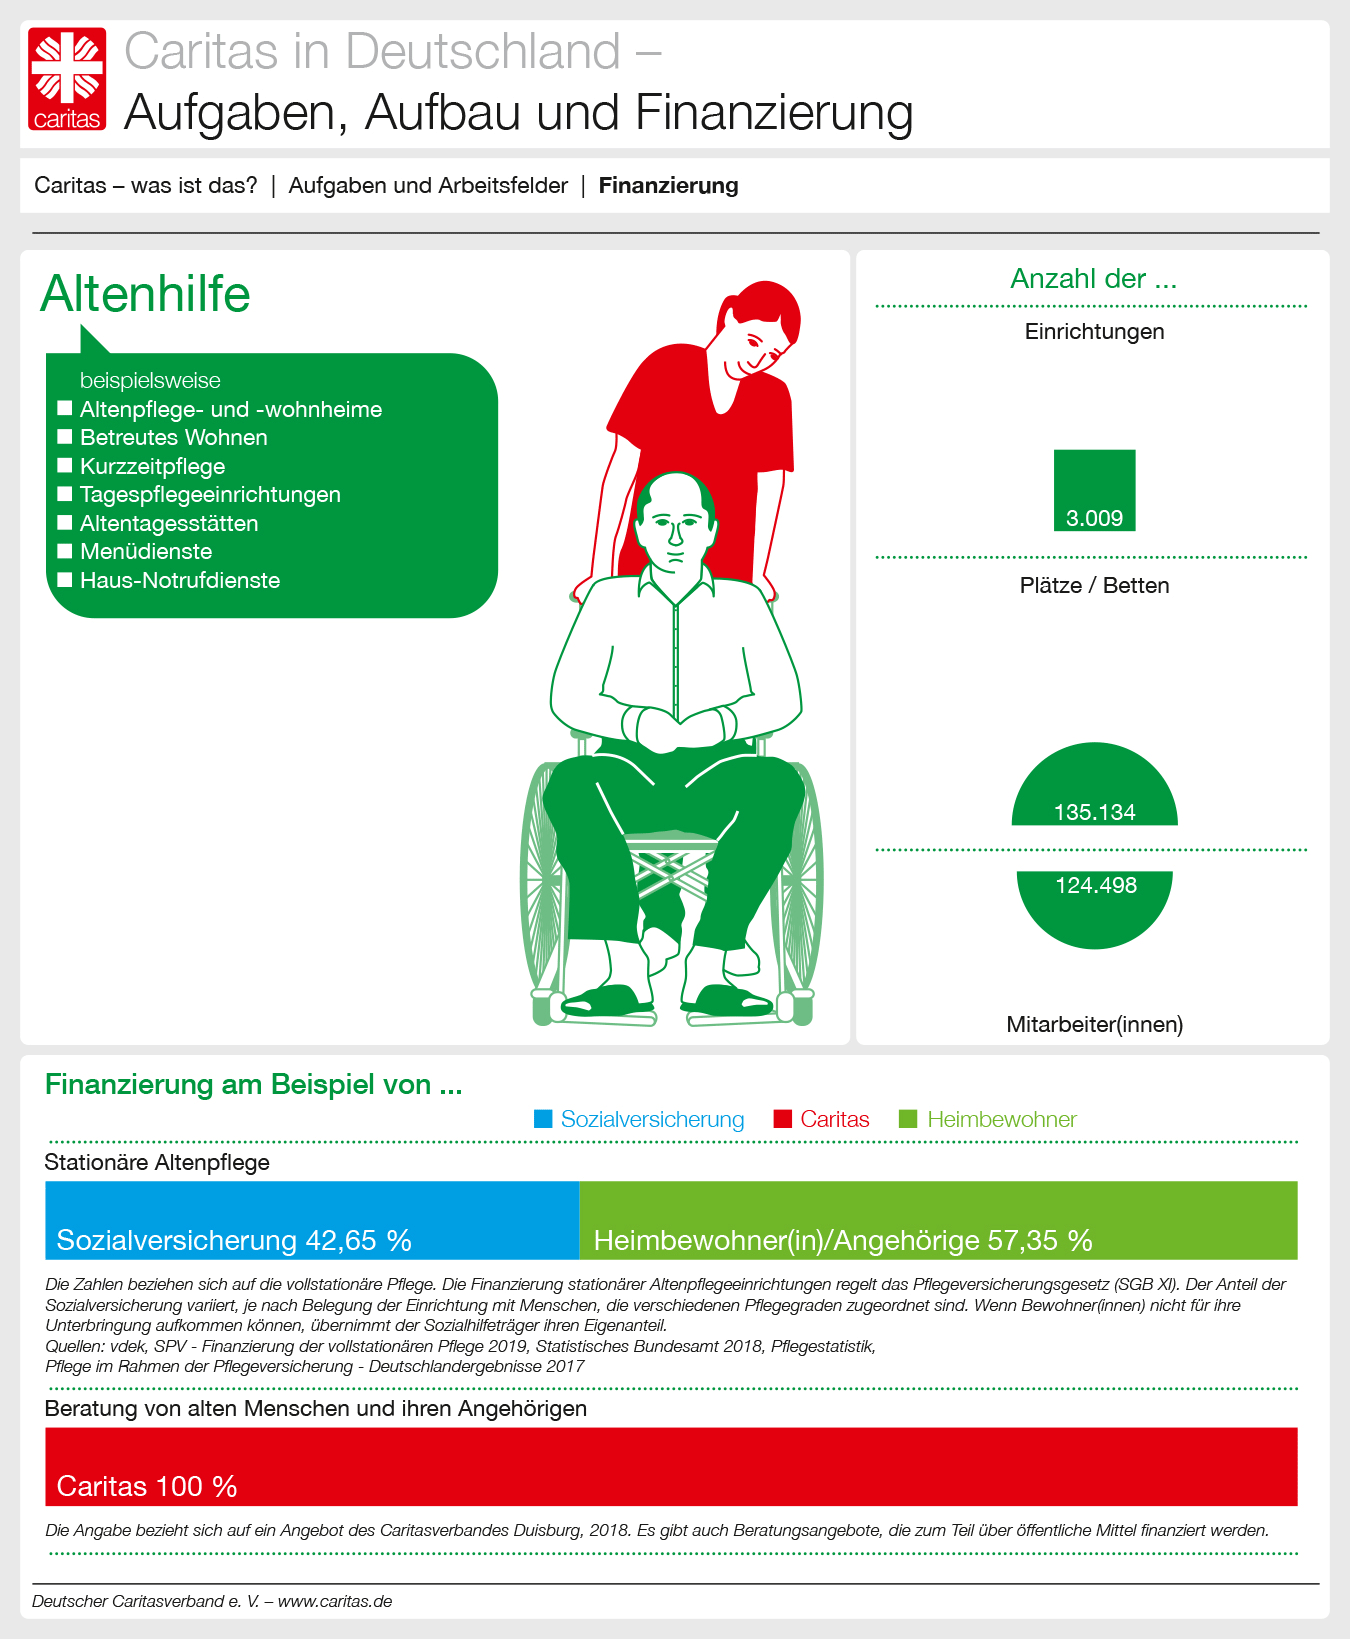 Finanzierungsbeispiele Altenhilfe (DCV/infografiker.com)